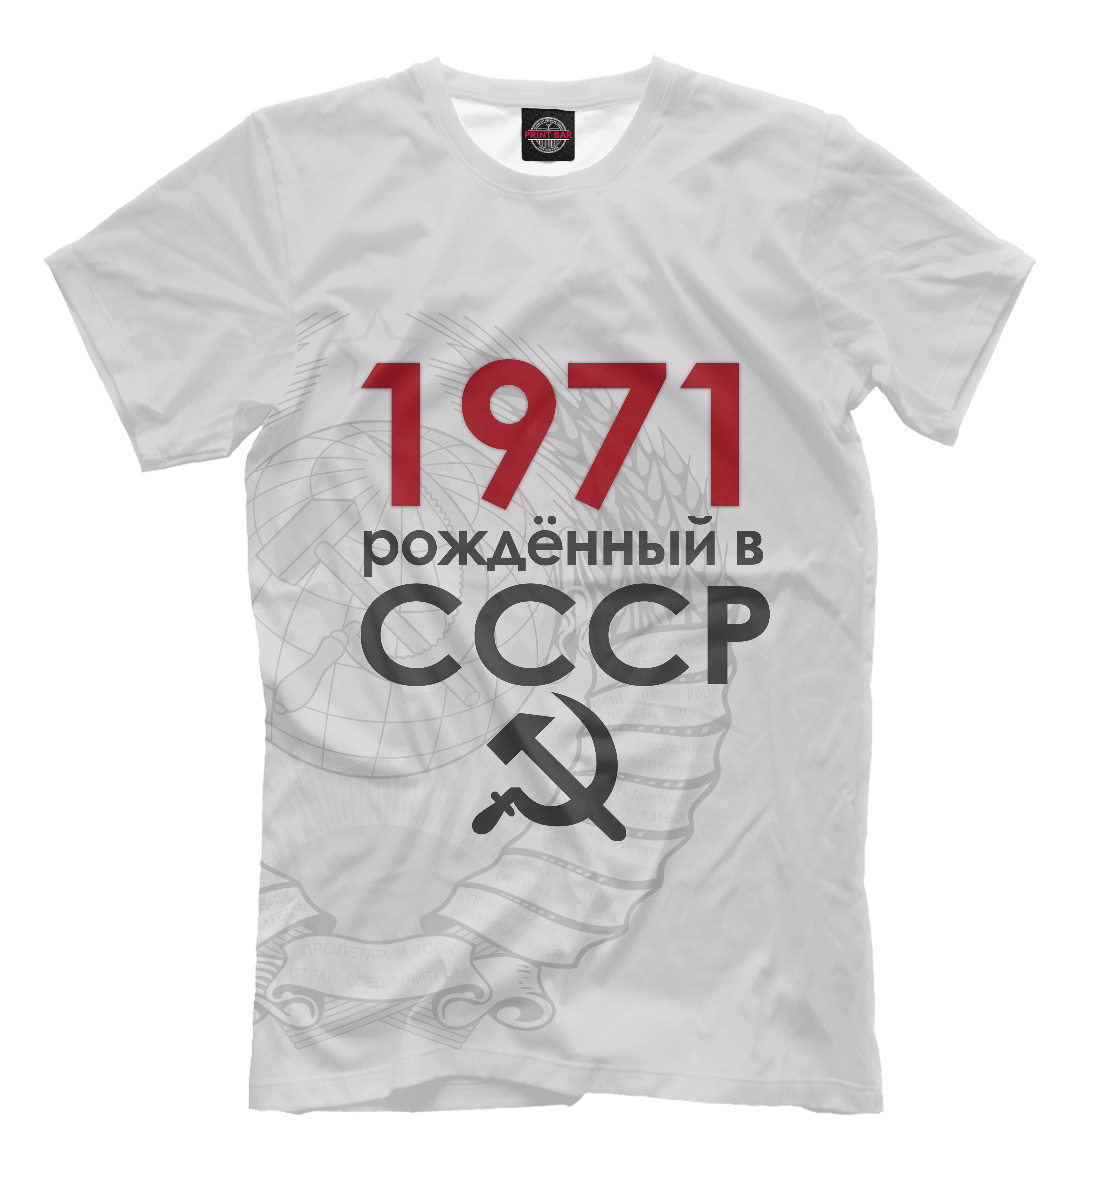 Мужская футболка с принтом Рожденный в СССР 1971